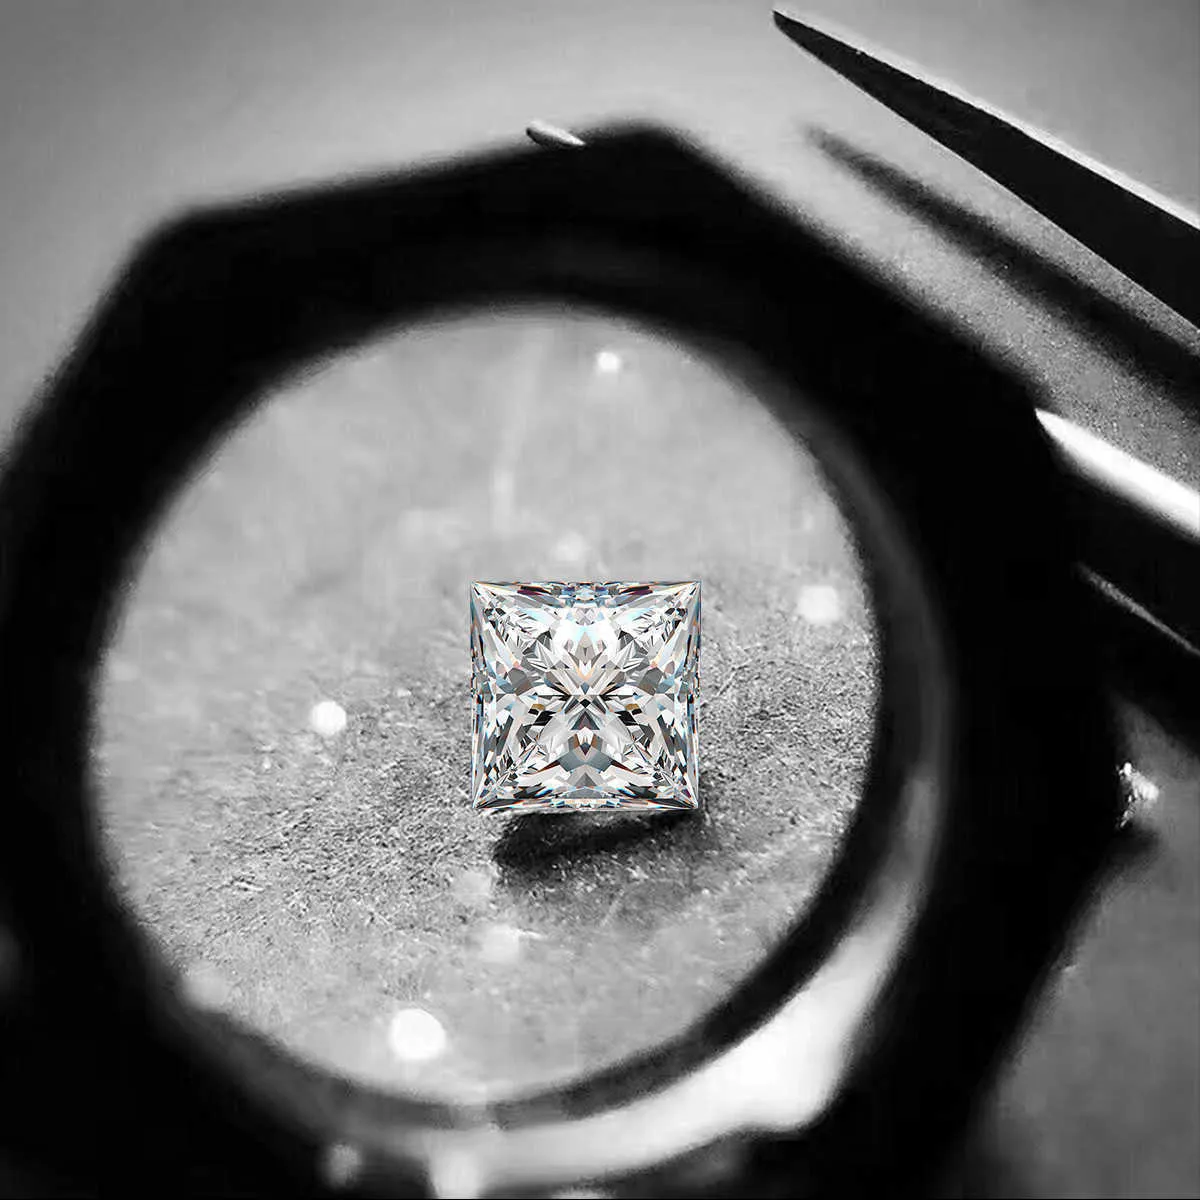 Cut Szjinao 5ct Подлинный 100% Принцесса Свободные Моайссанитовые Карат Камни 9 5 мм D Цвет VVS1 Лаборатория выращенных бриллиантовых драгоценных камней Блестящие драгоценные камни H314W